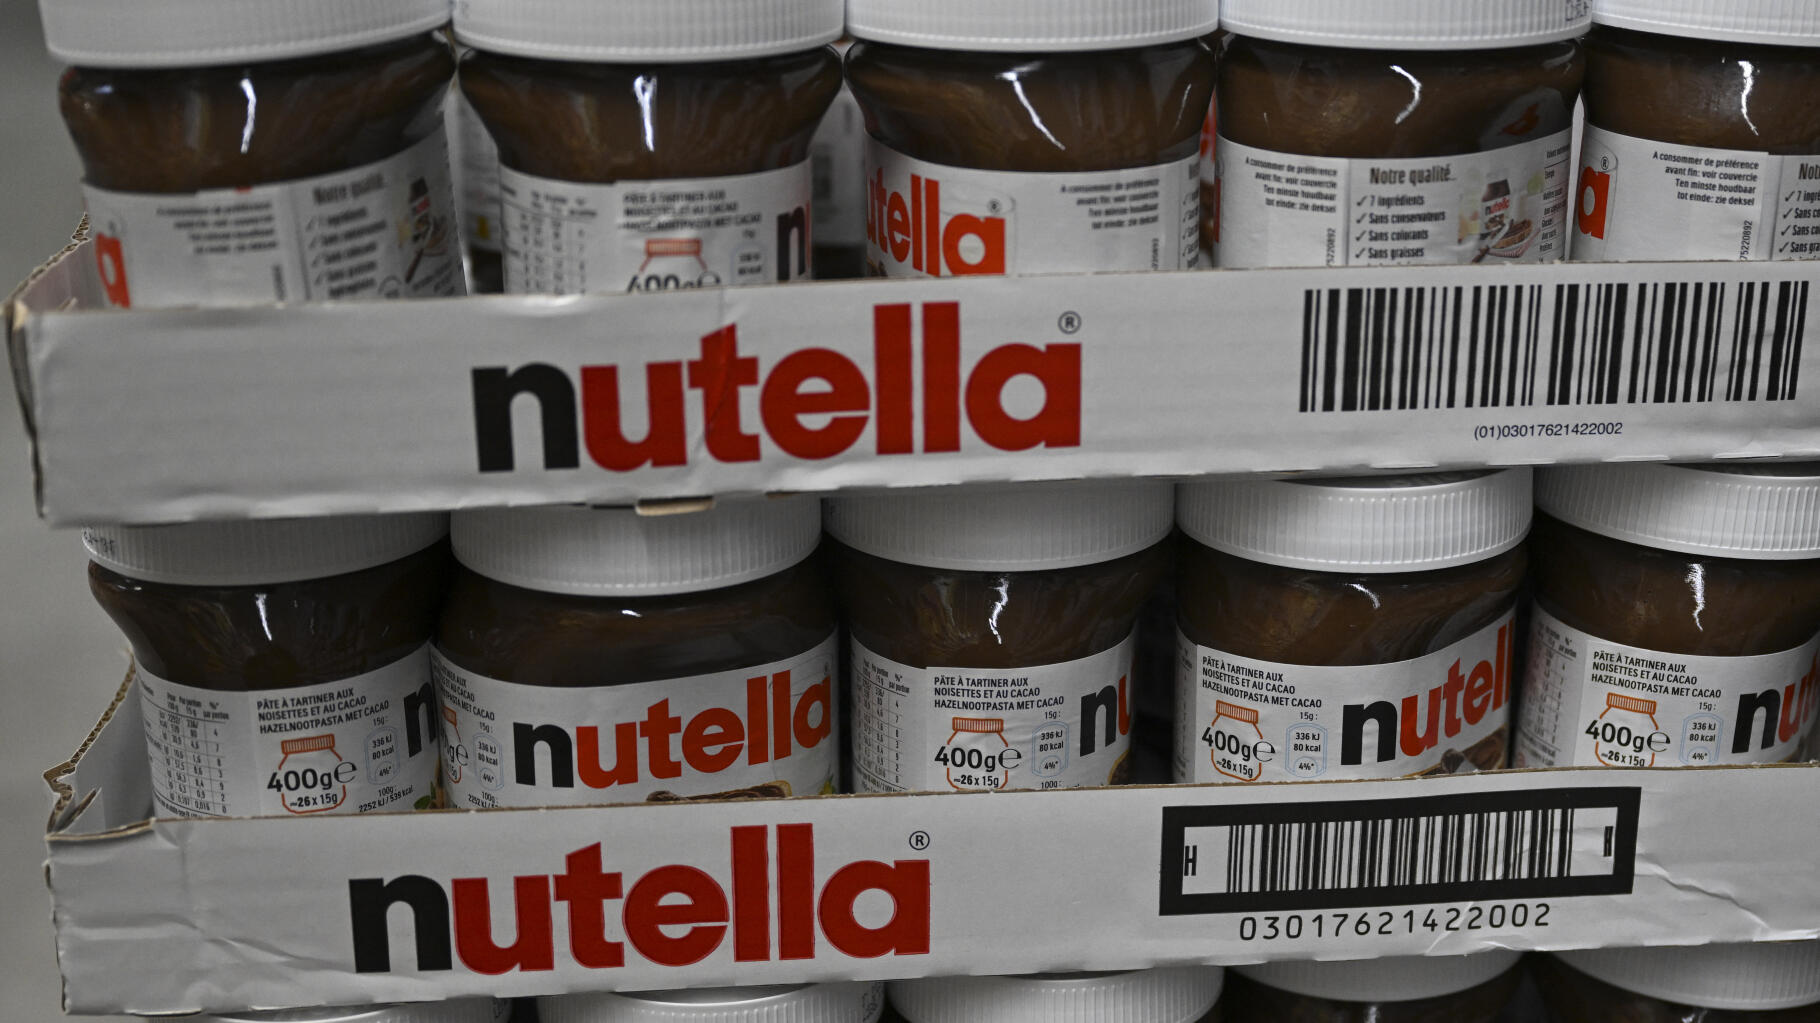 Le kilo de Nutella à 40 euros, le faux bon plan d’Auchan, mais vrai cas de « shrinkflation »